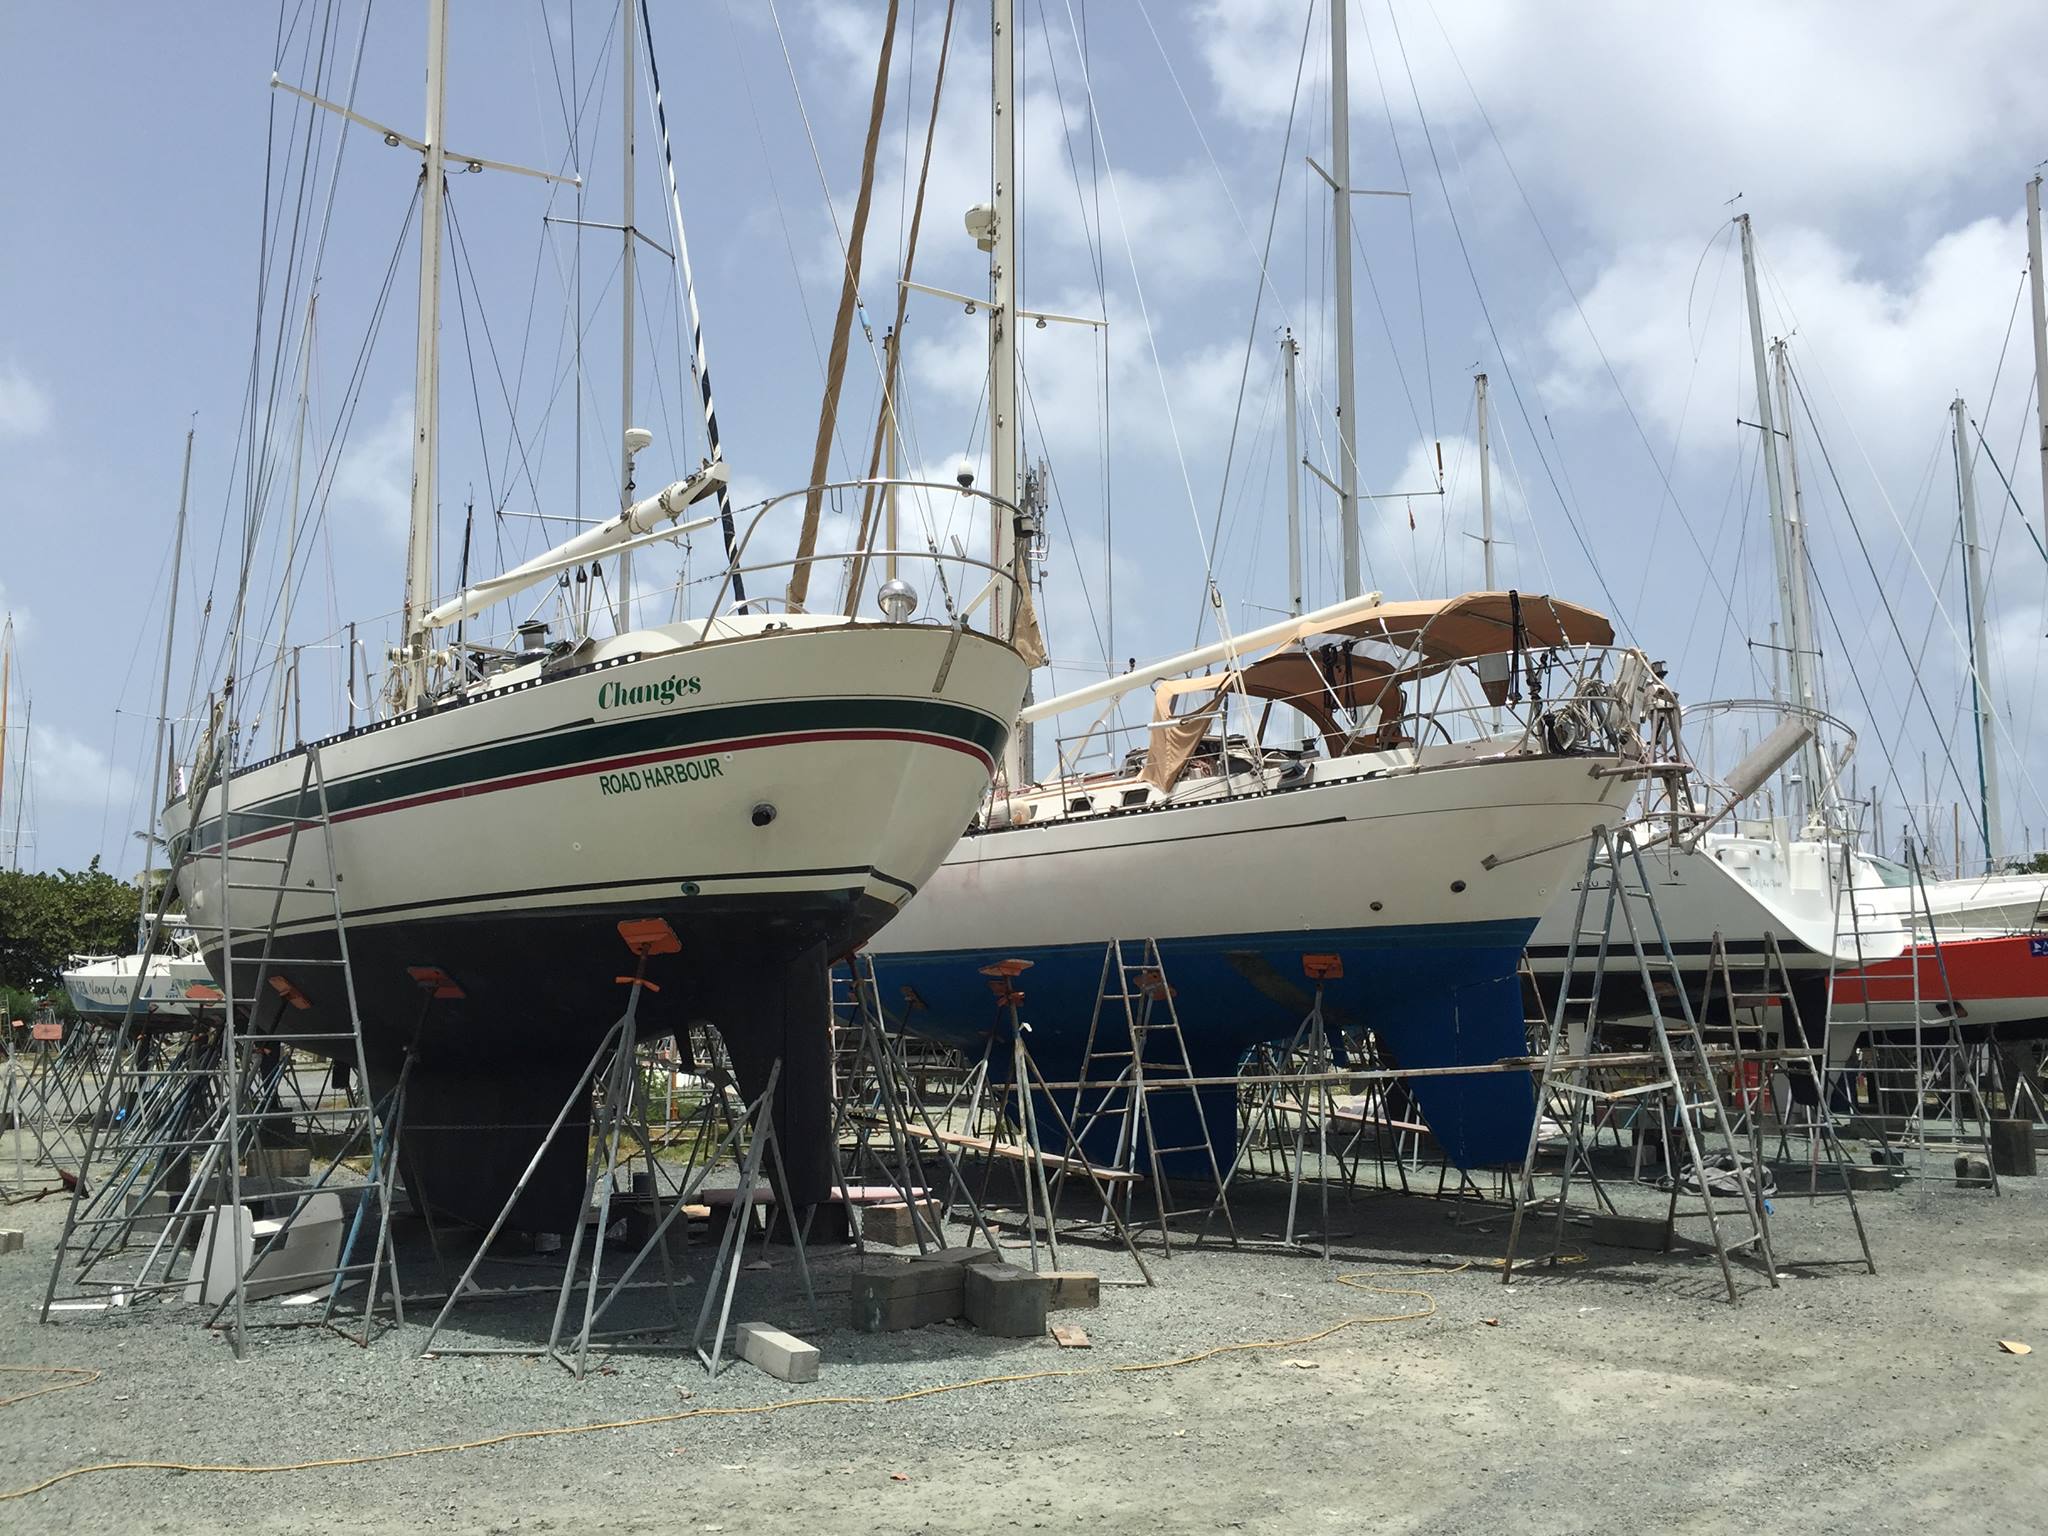 44 foot lafitte sailboat